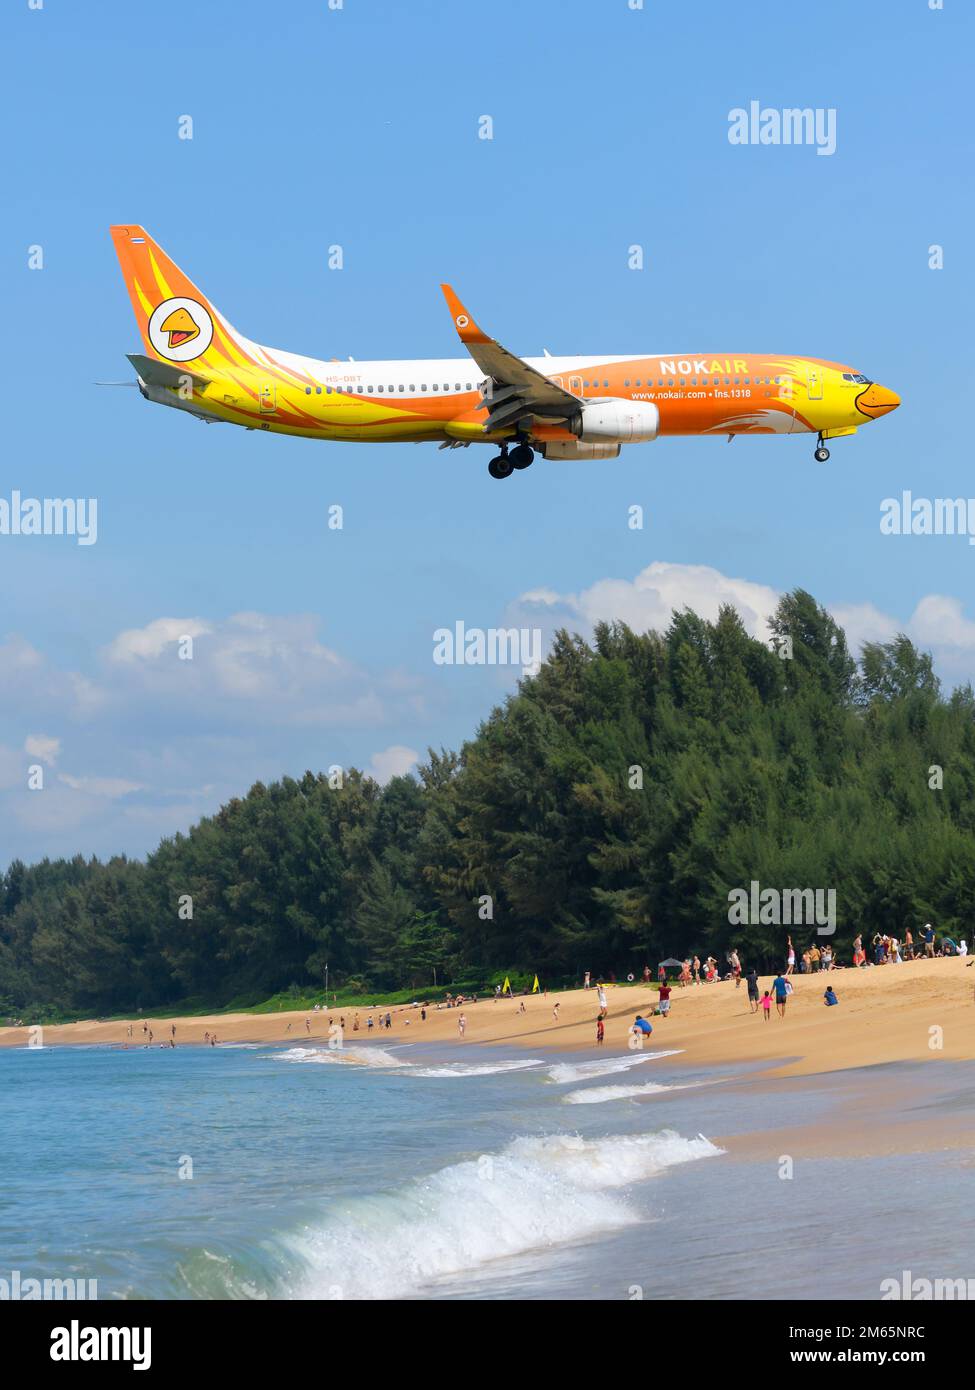 NOK Air Boeing 737-Flugzeuge fliegen über Mai Khao Beach, bevor sie am Flughafen Phuket landen. Flugzeug 737-800 von NokAir Thailand (NOK Air Thailand). Stockfoto